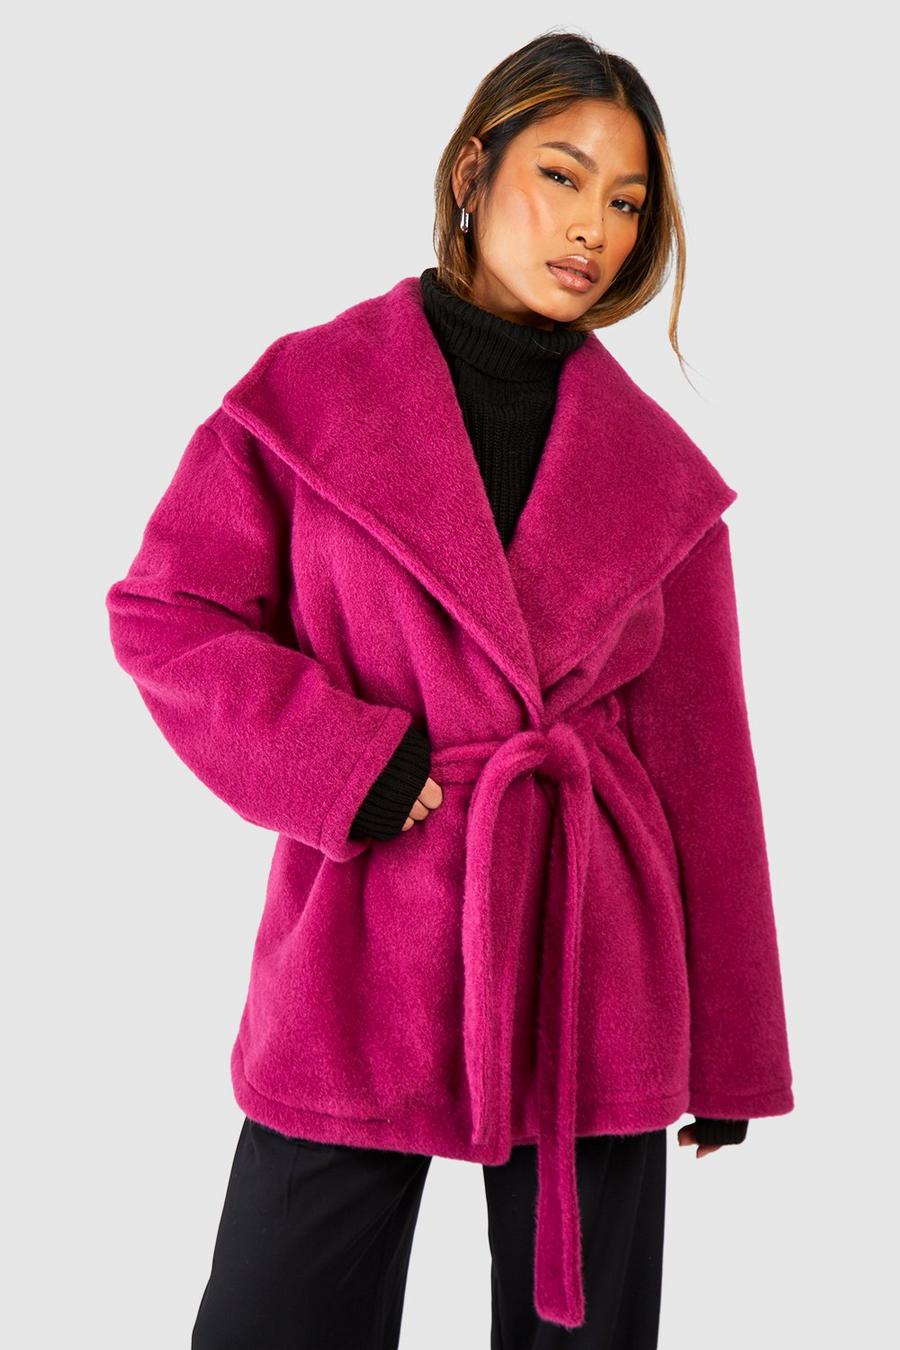 Cappotto lungo effetto lana con trama, colletto sciallato e cintura, Raspberry